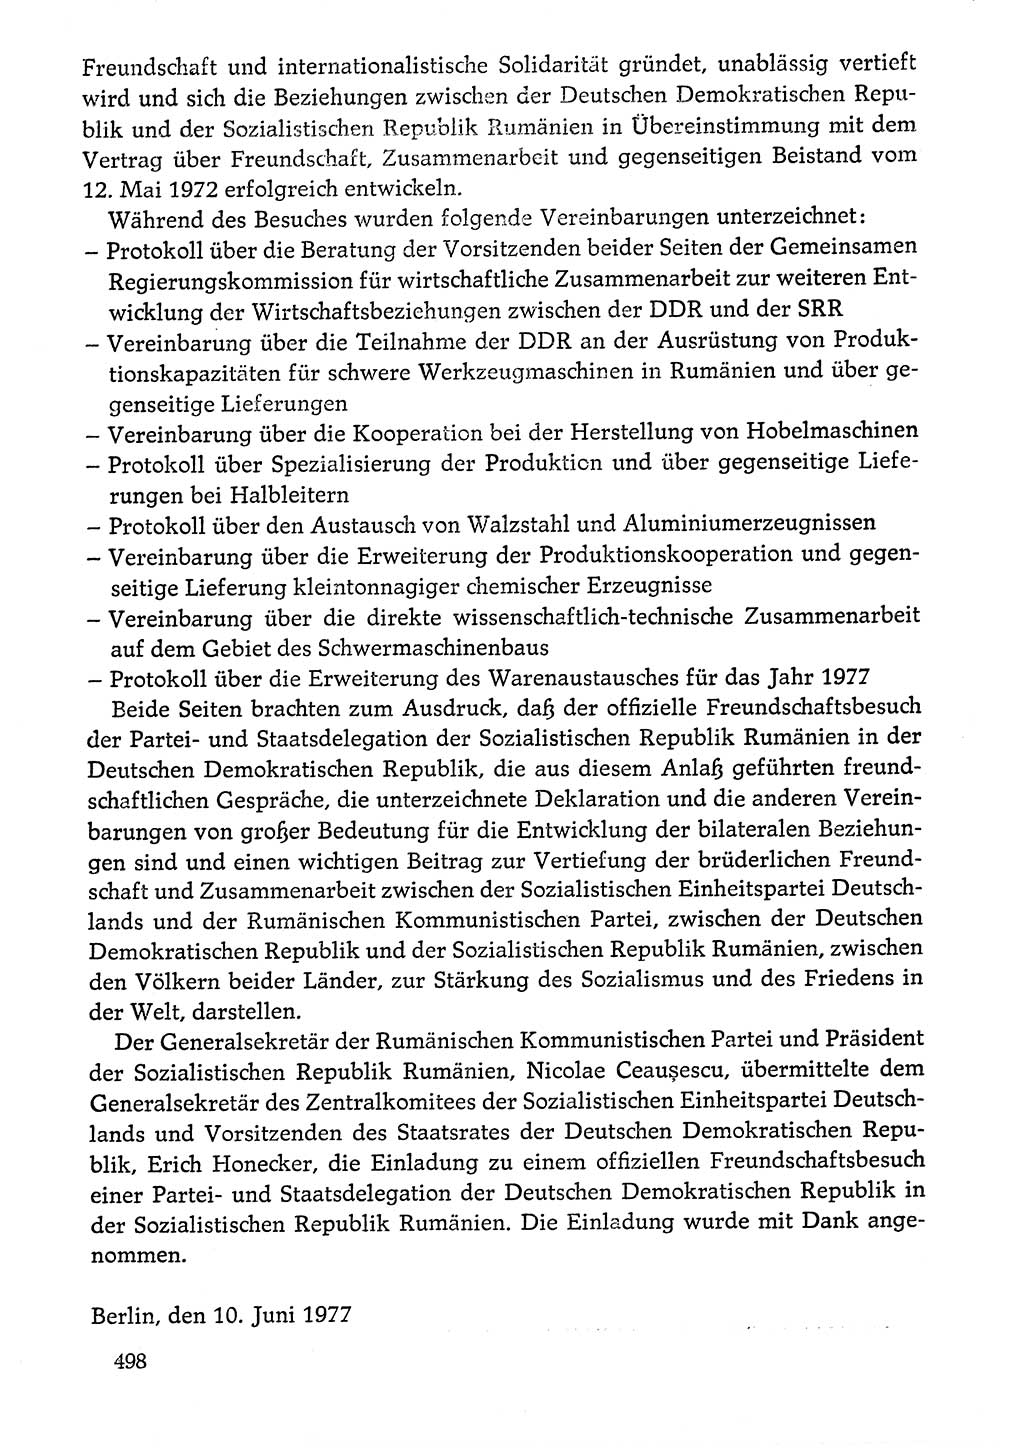 Dokumente der Sozialistischen Einheitspartei Deutschlands (SED) [Deutsche Demokratische Republik (DDR)] 1976-1977, Seite 498 (Dok. SED DDR 1976-1977, S. 498)